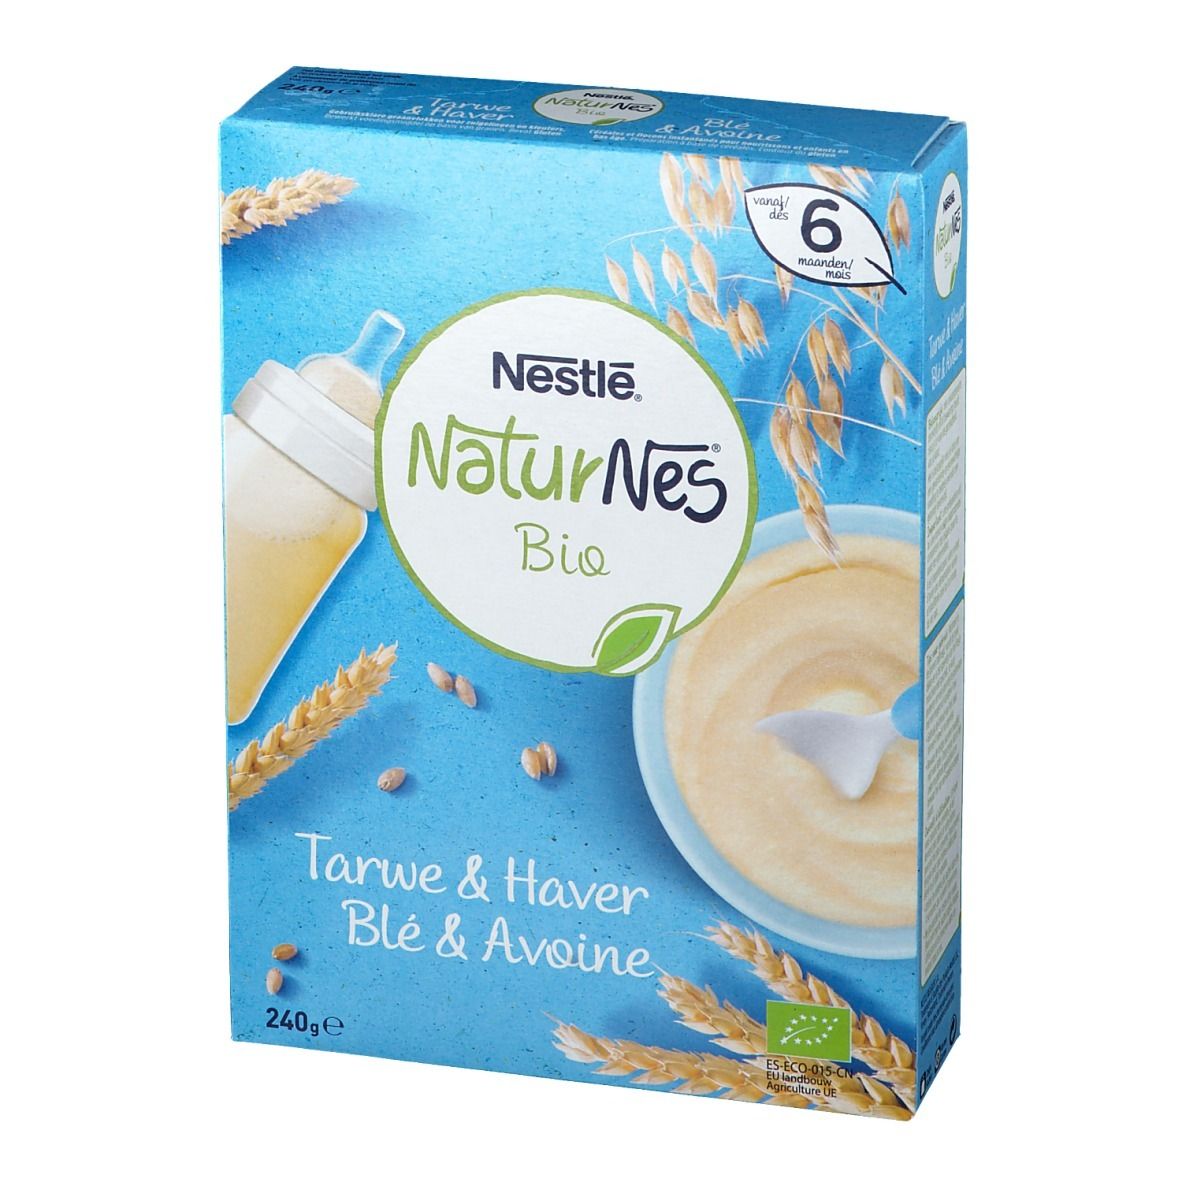 Nestlé NaturNes Bio Tarwe & Haver